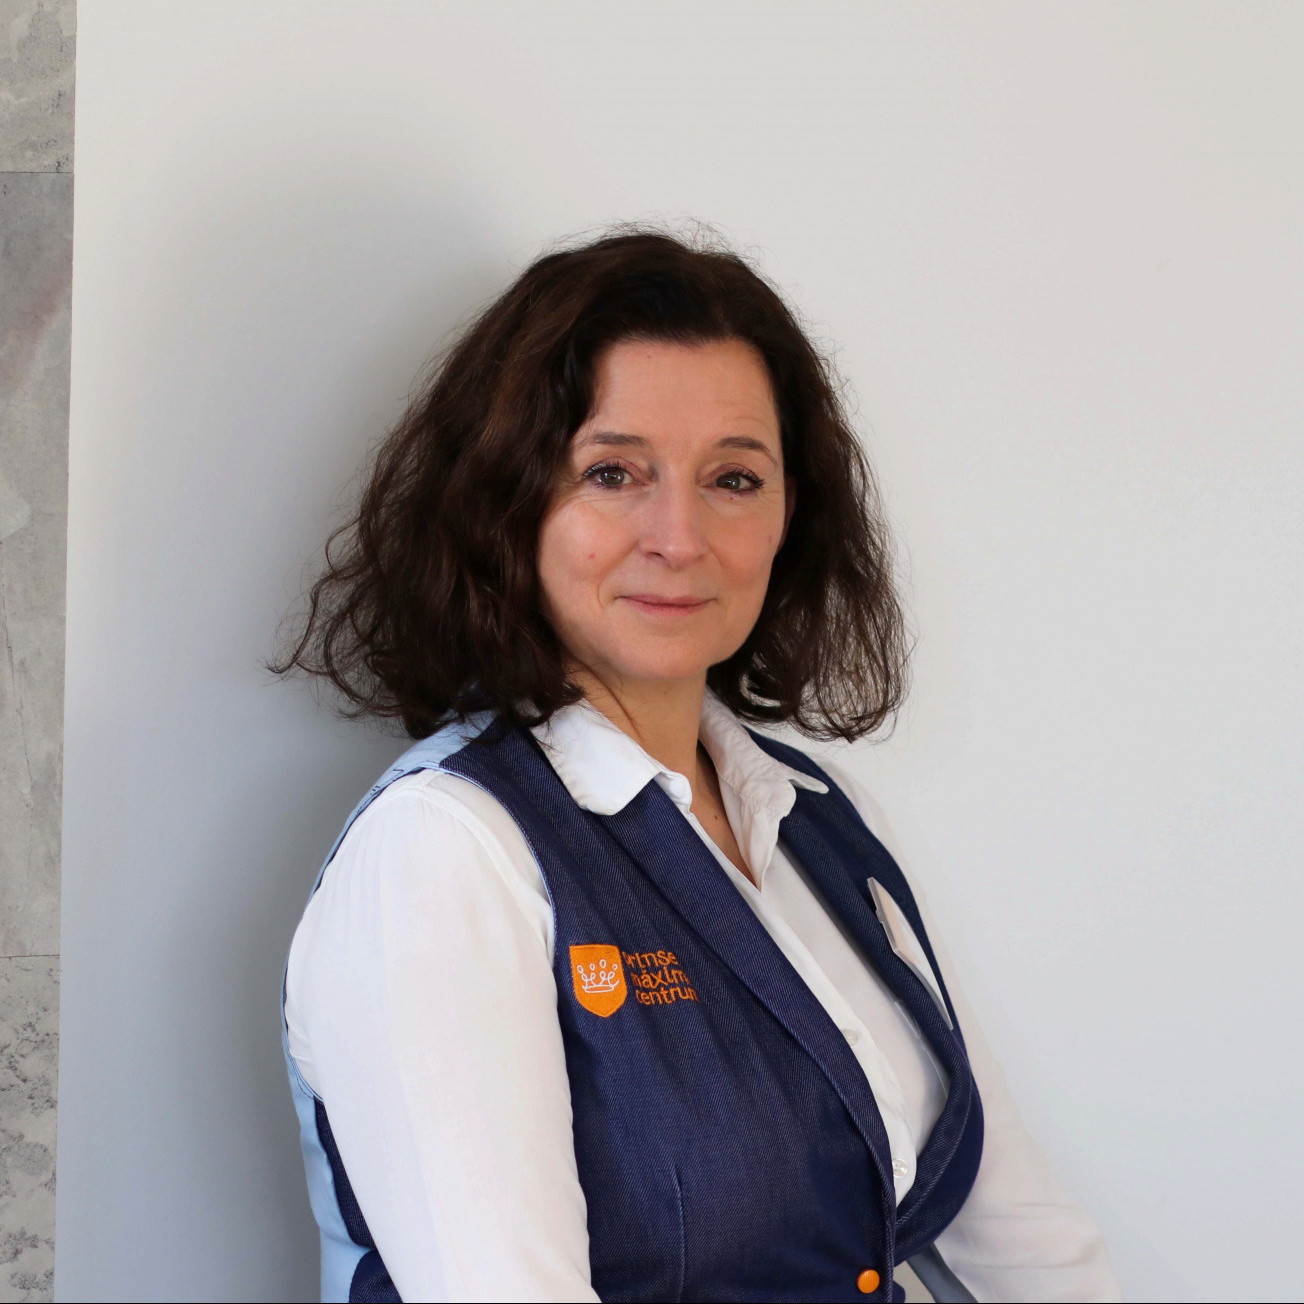 Lizette Borghuis: ‘Ik merk dat ik als vrijwilliger echt wat kan toevoegen.’